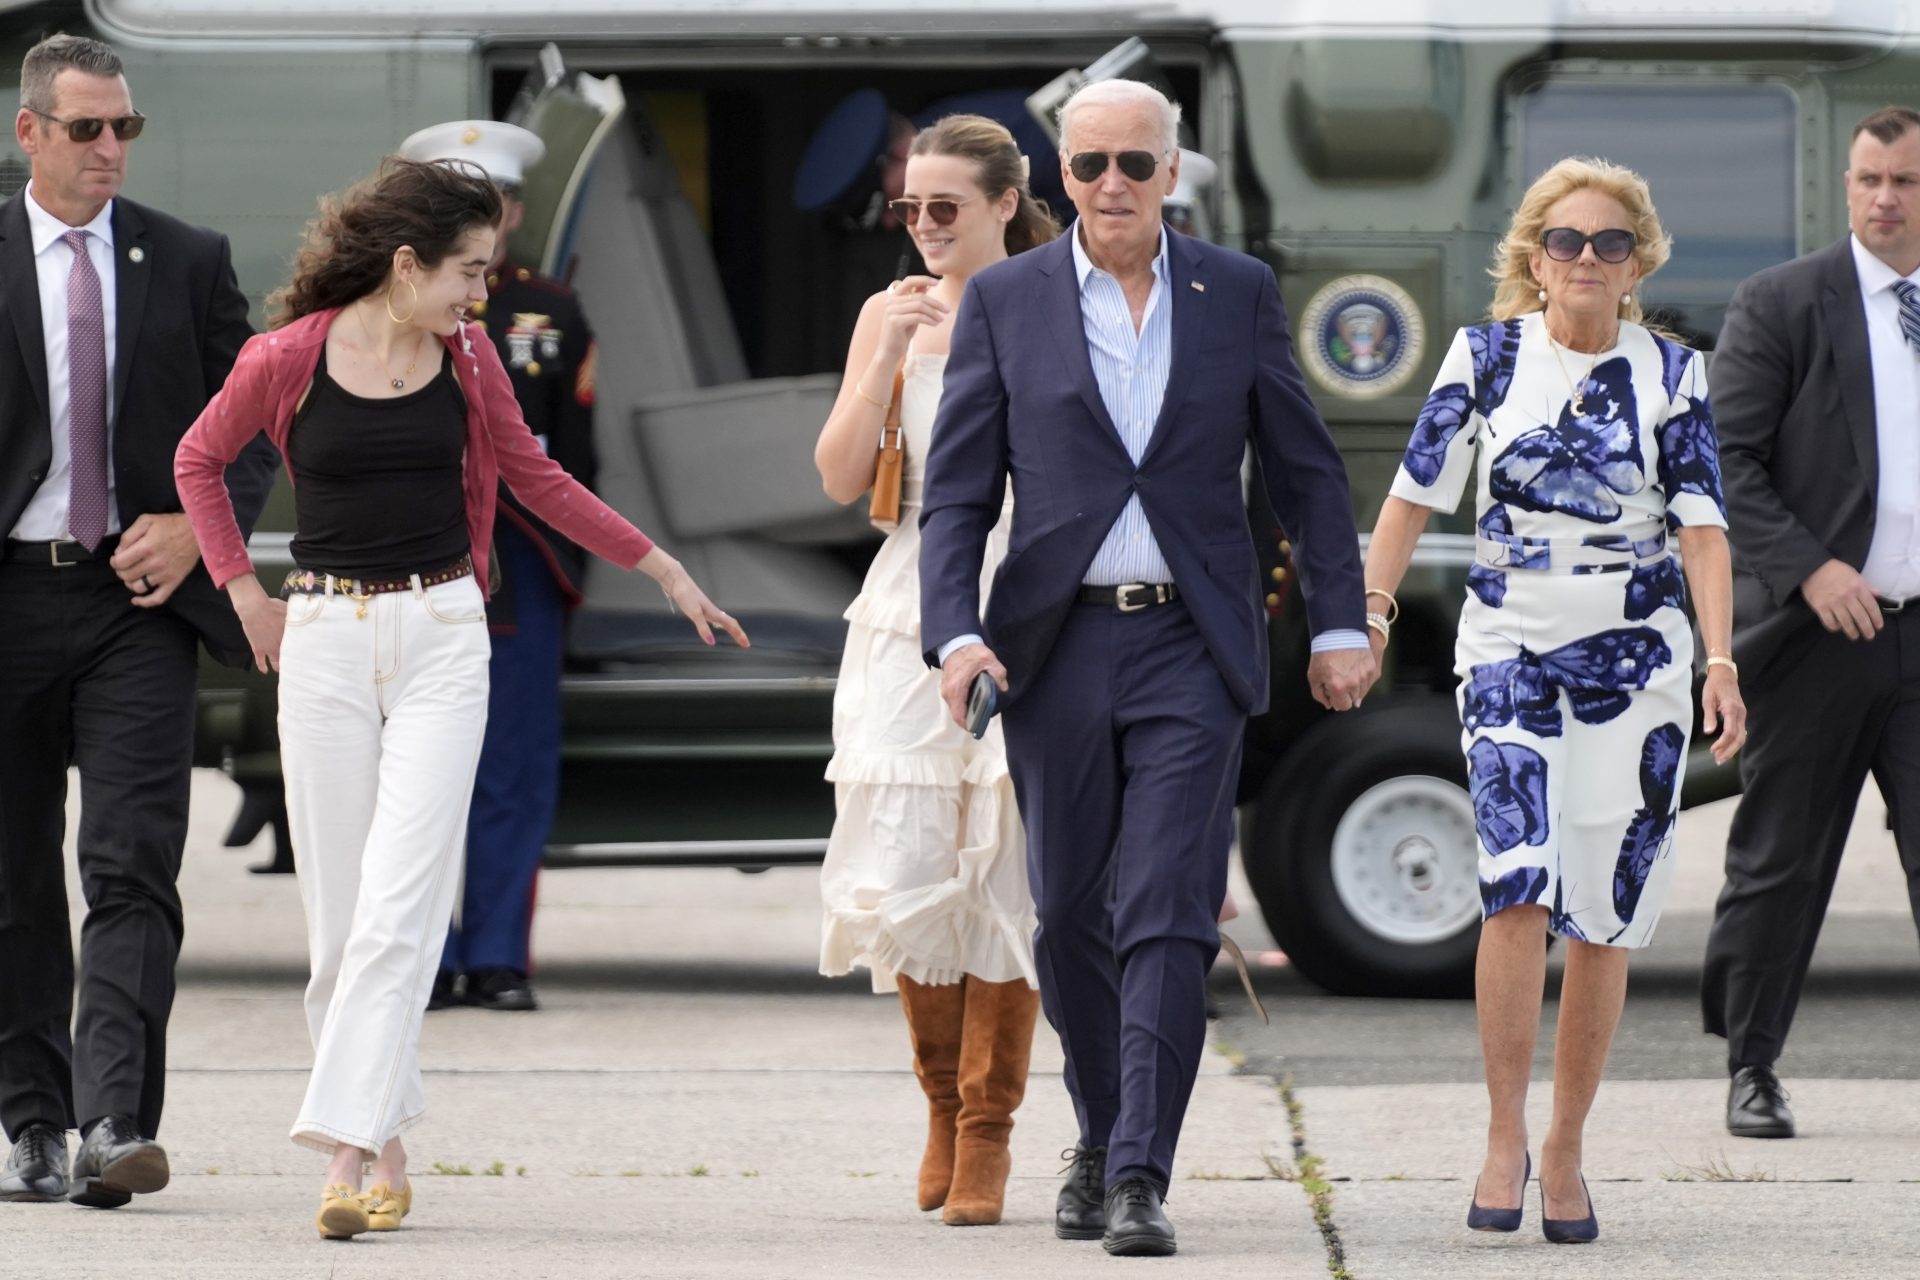 La famille de Biden l'encourage à rester dans la présidence US